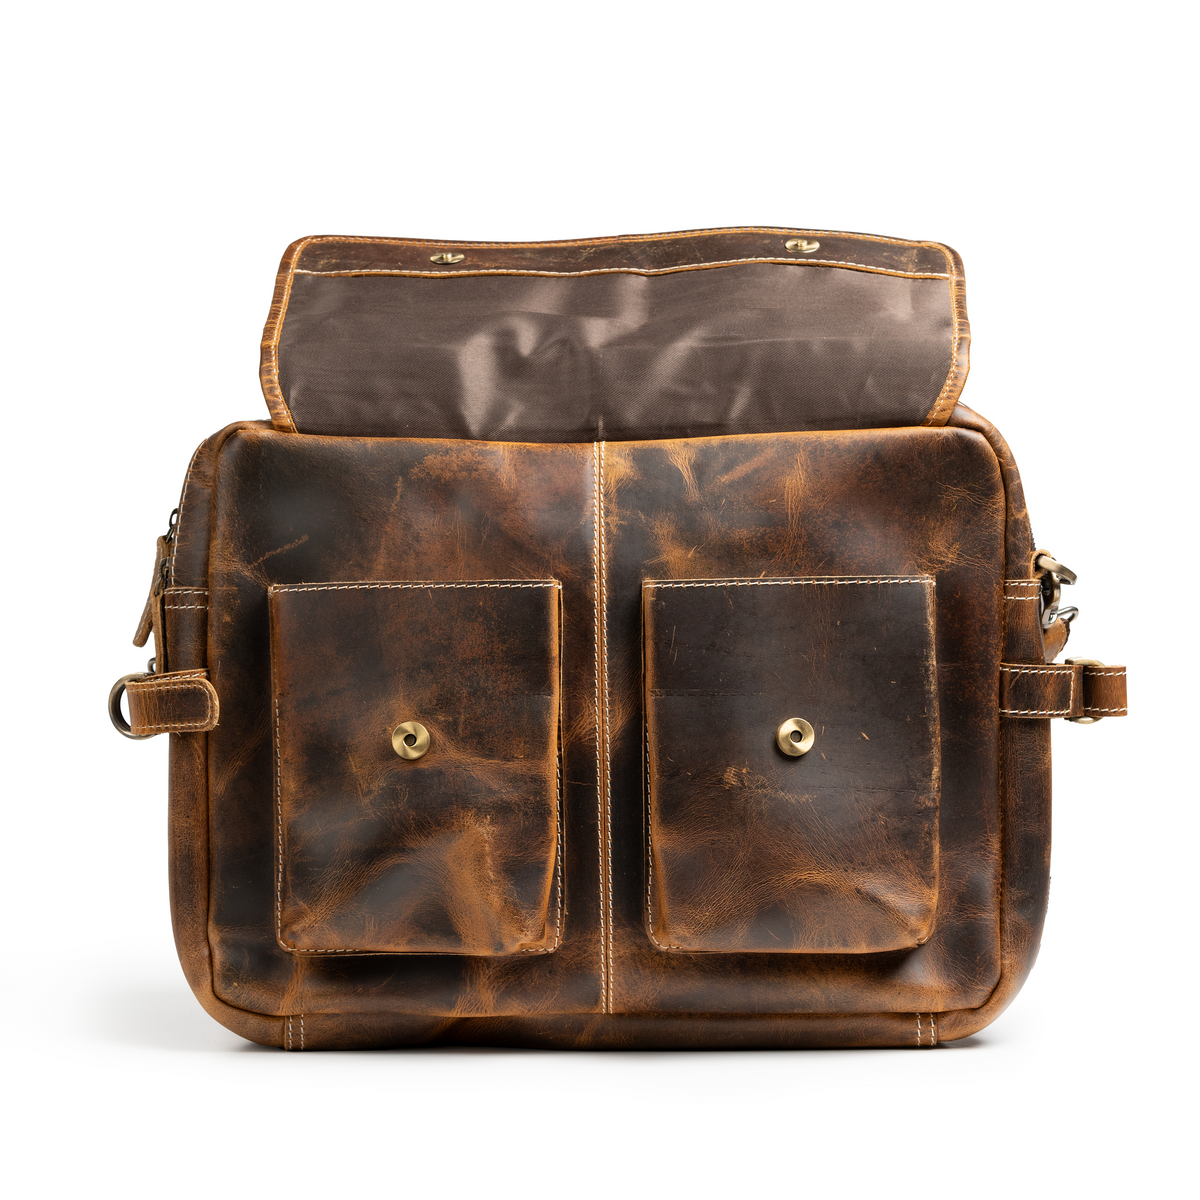 Shop Vintage Messenger Bag for Men and Women – Luggage Factory